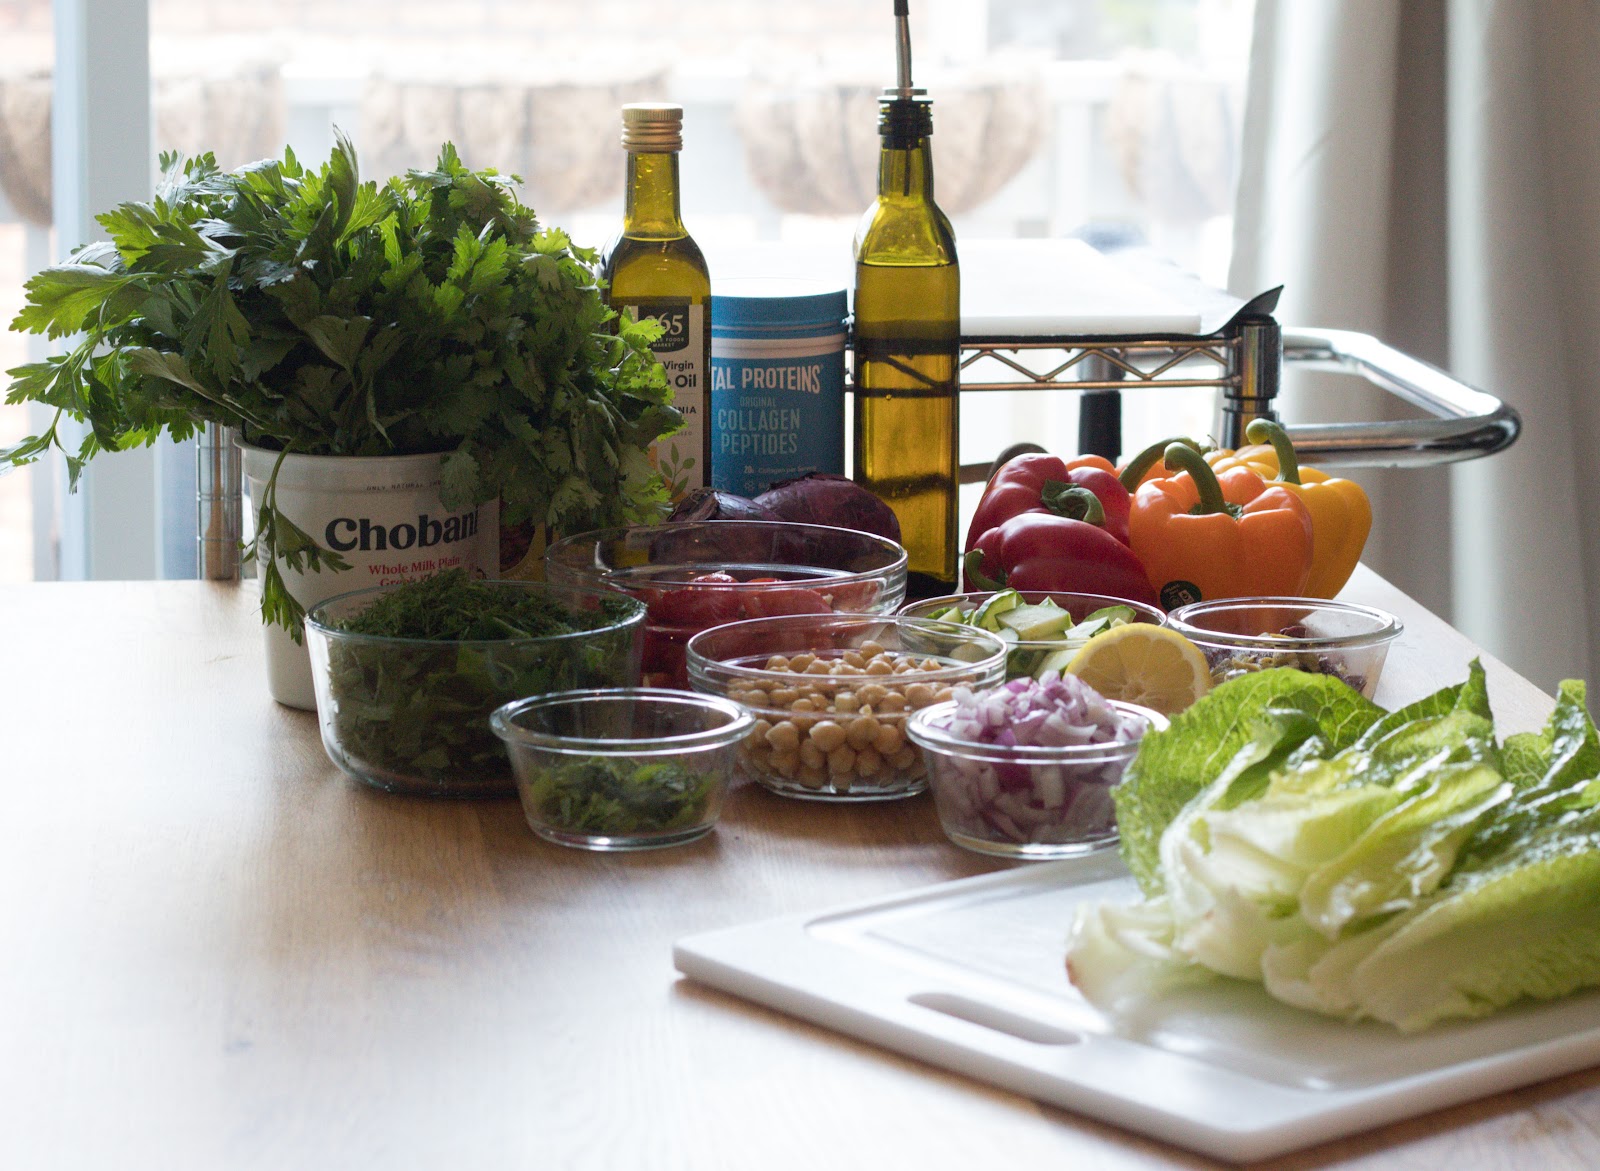 Greek Salad Ingredients
Patience & Pearls